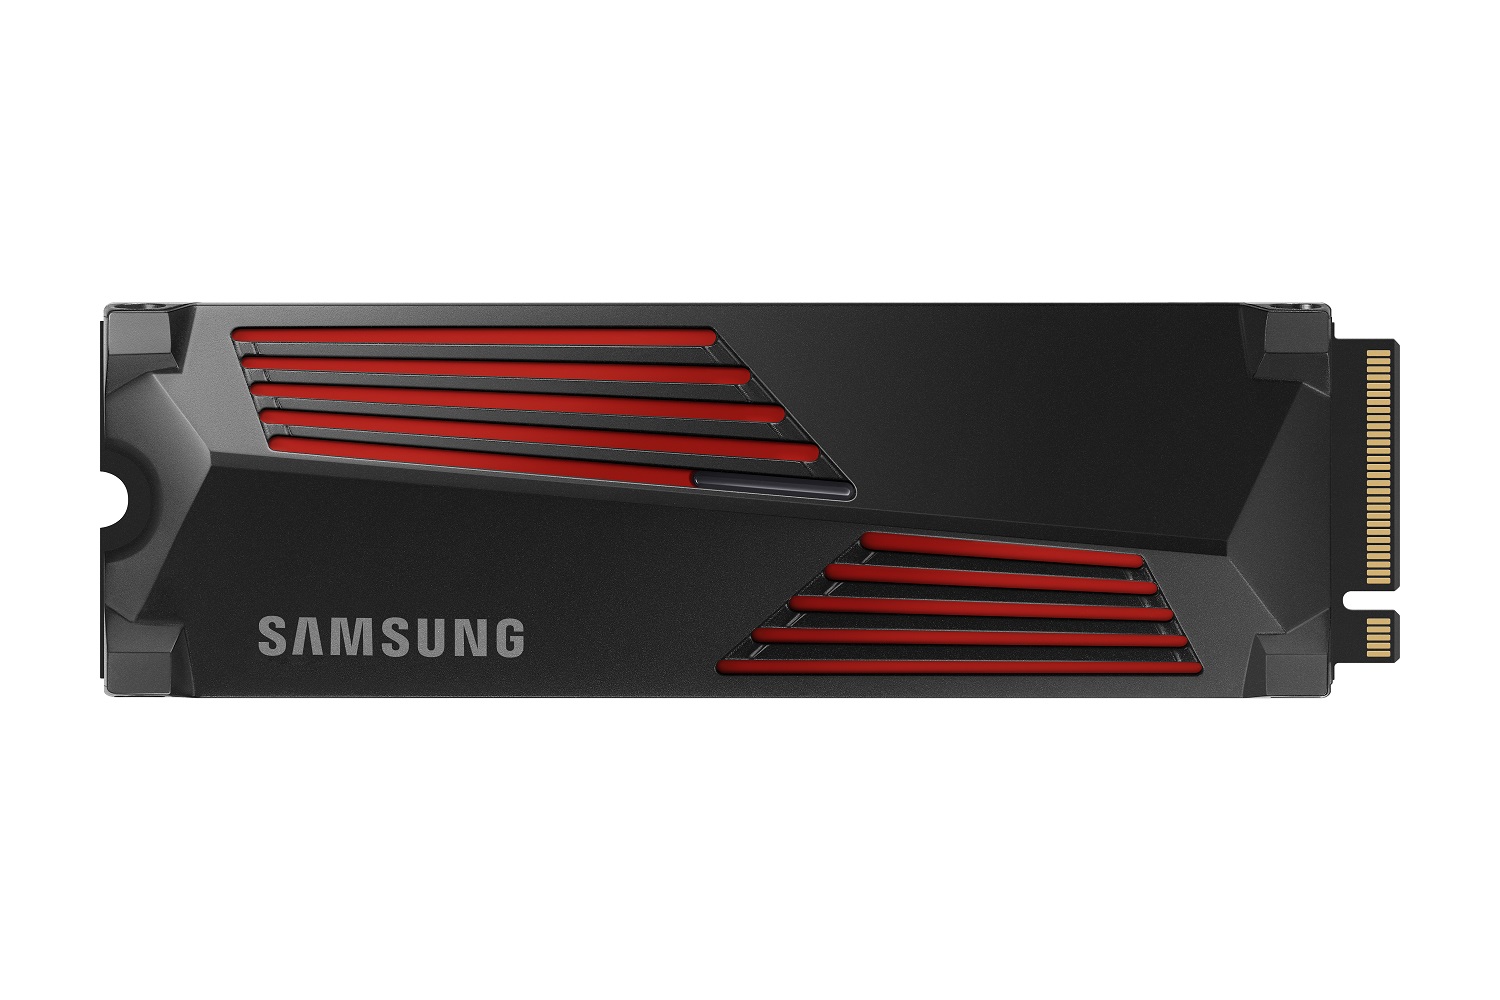 Samsung 990 Pro SSD PS5 DirectStorage con disipador térmico frontal